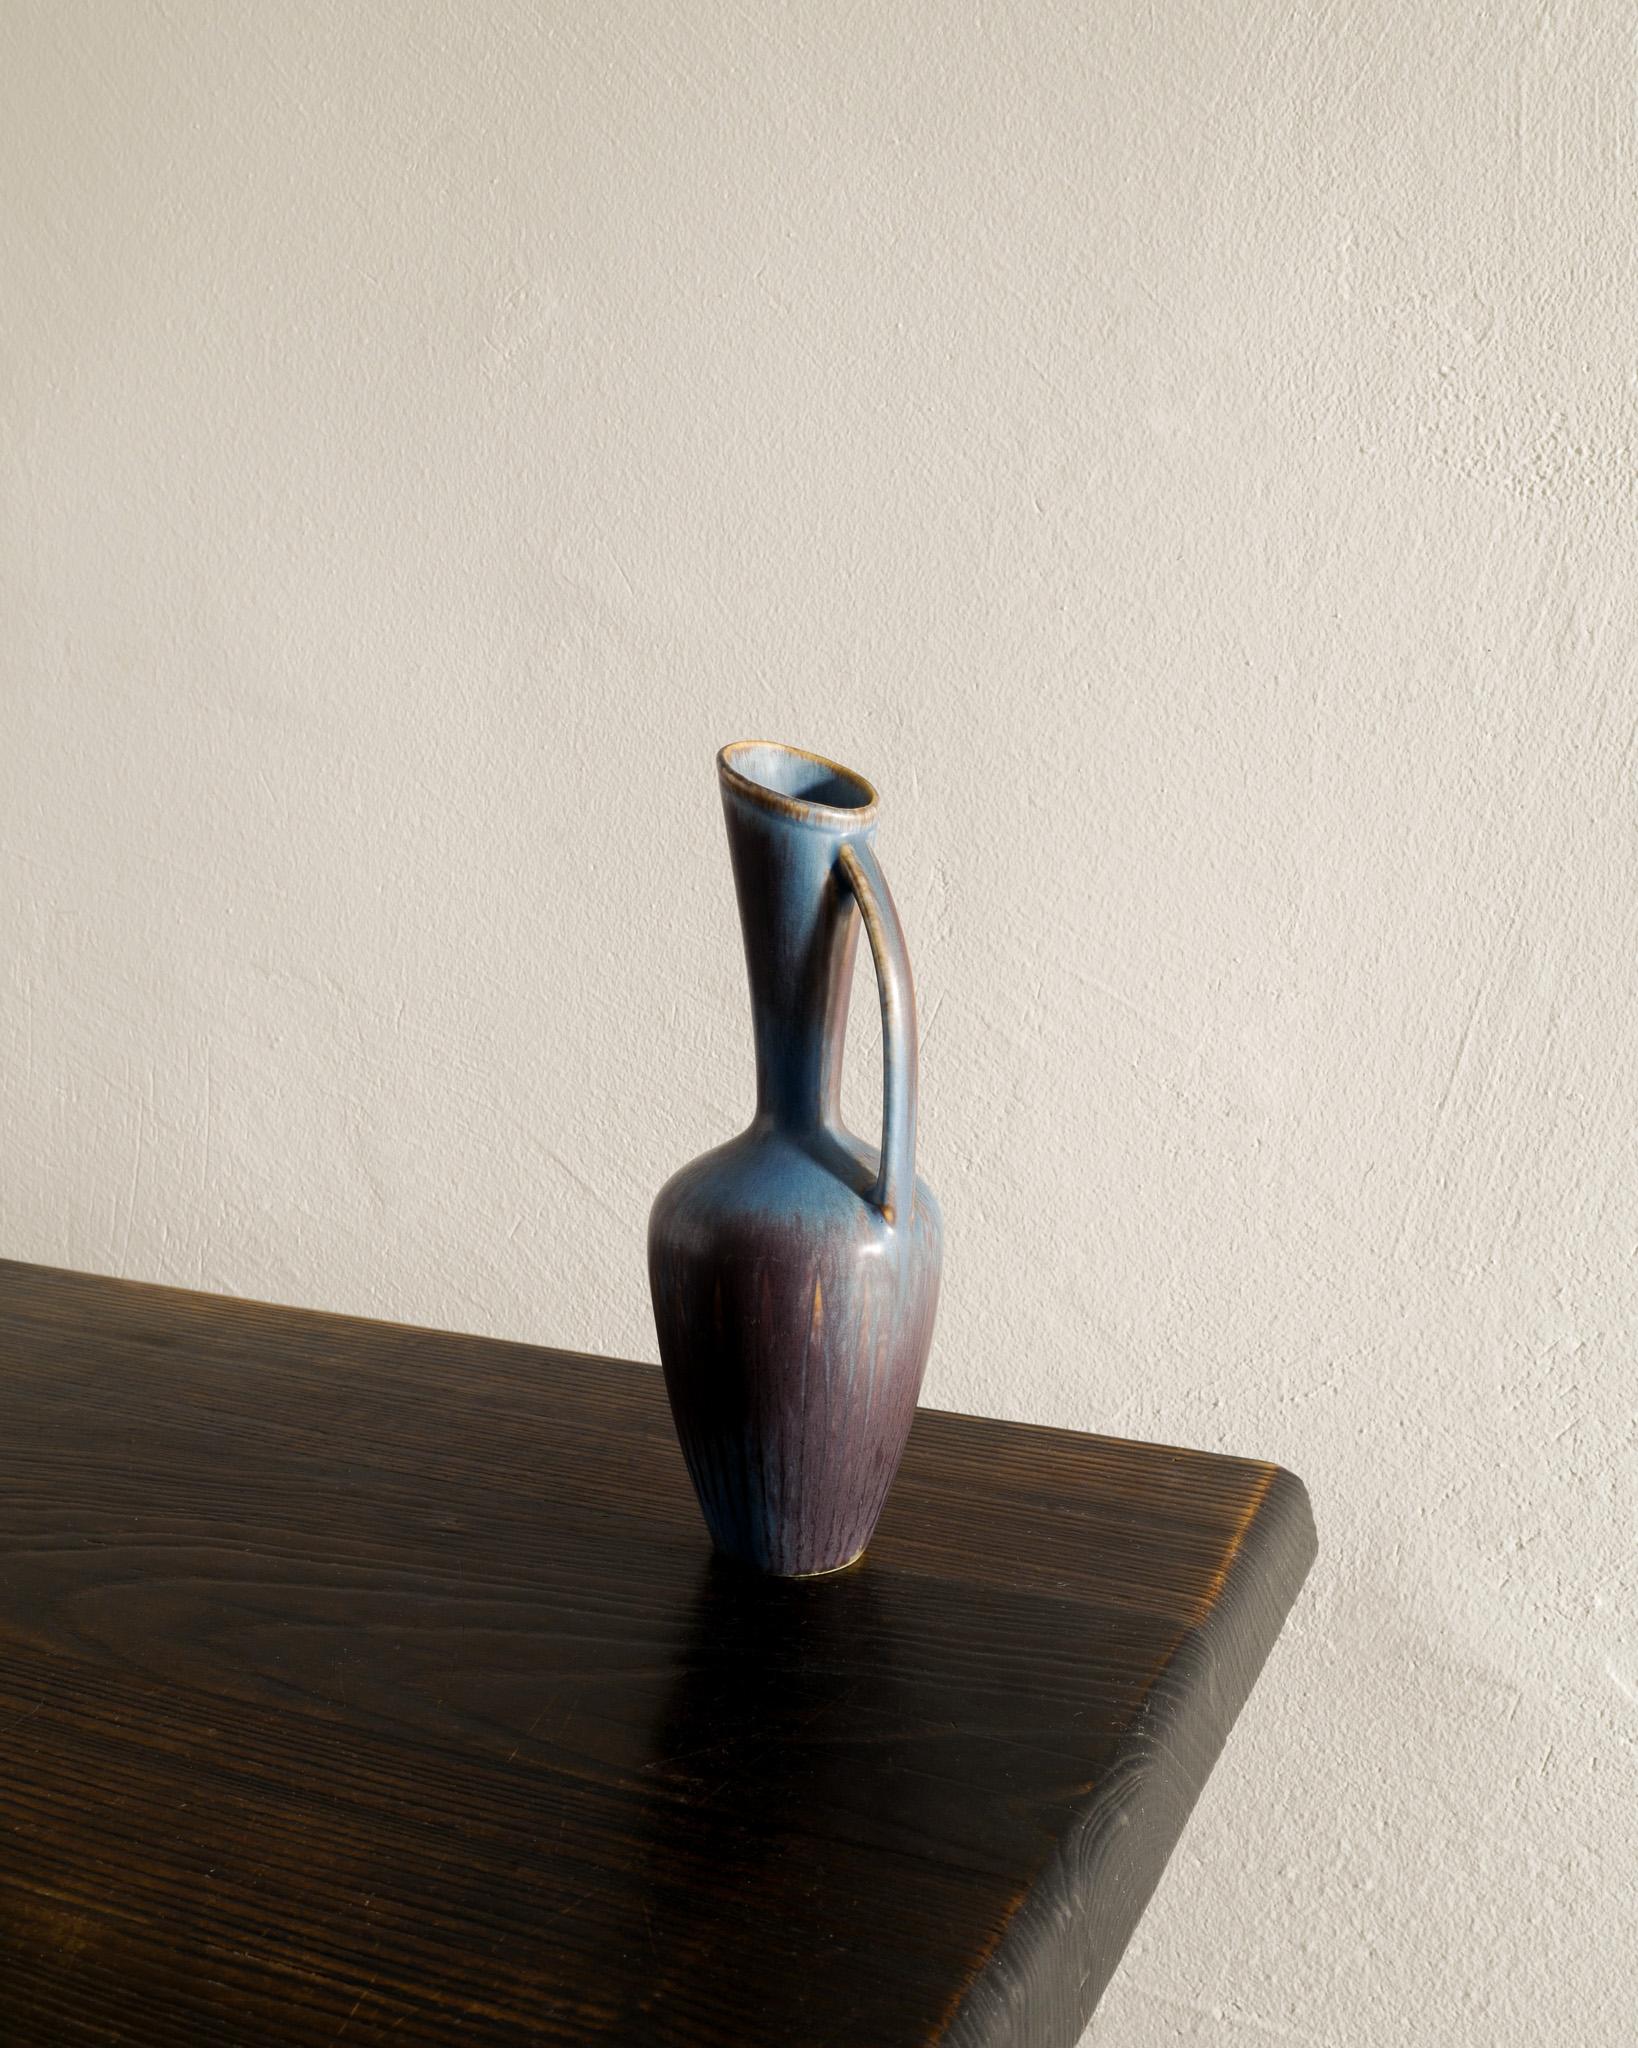 Seltene Keramik / Steingut Krug Vase in blau-braune Glasur von Gunnar Nylund produziert von Rörstrand Schweden 1950er Jahren. In gutem Zustand. Unterzeichnet 